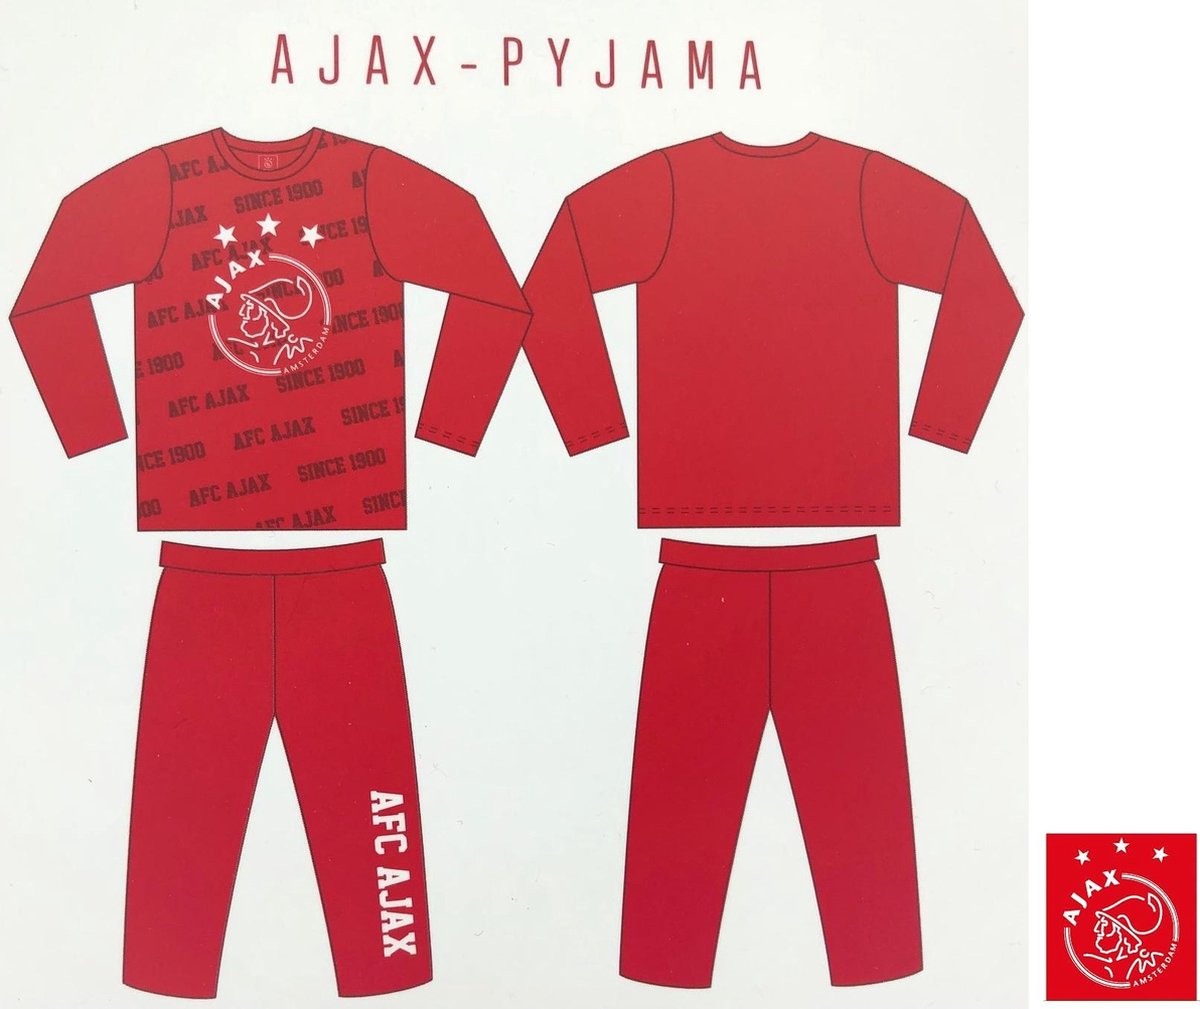 Ajax - Pyjama - Club Kleuren - Amsterdam - Voetbal - Maat 140/146 | bol.com